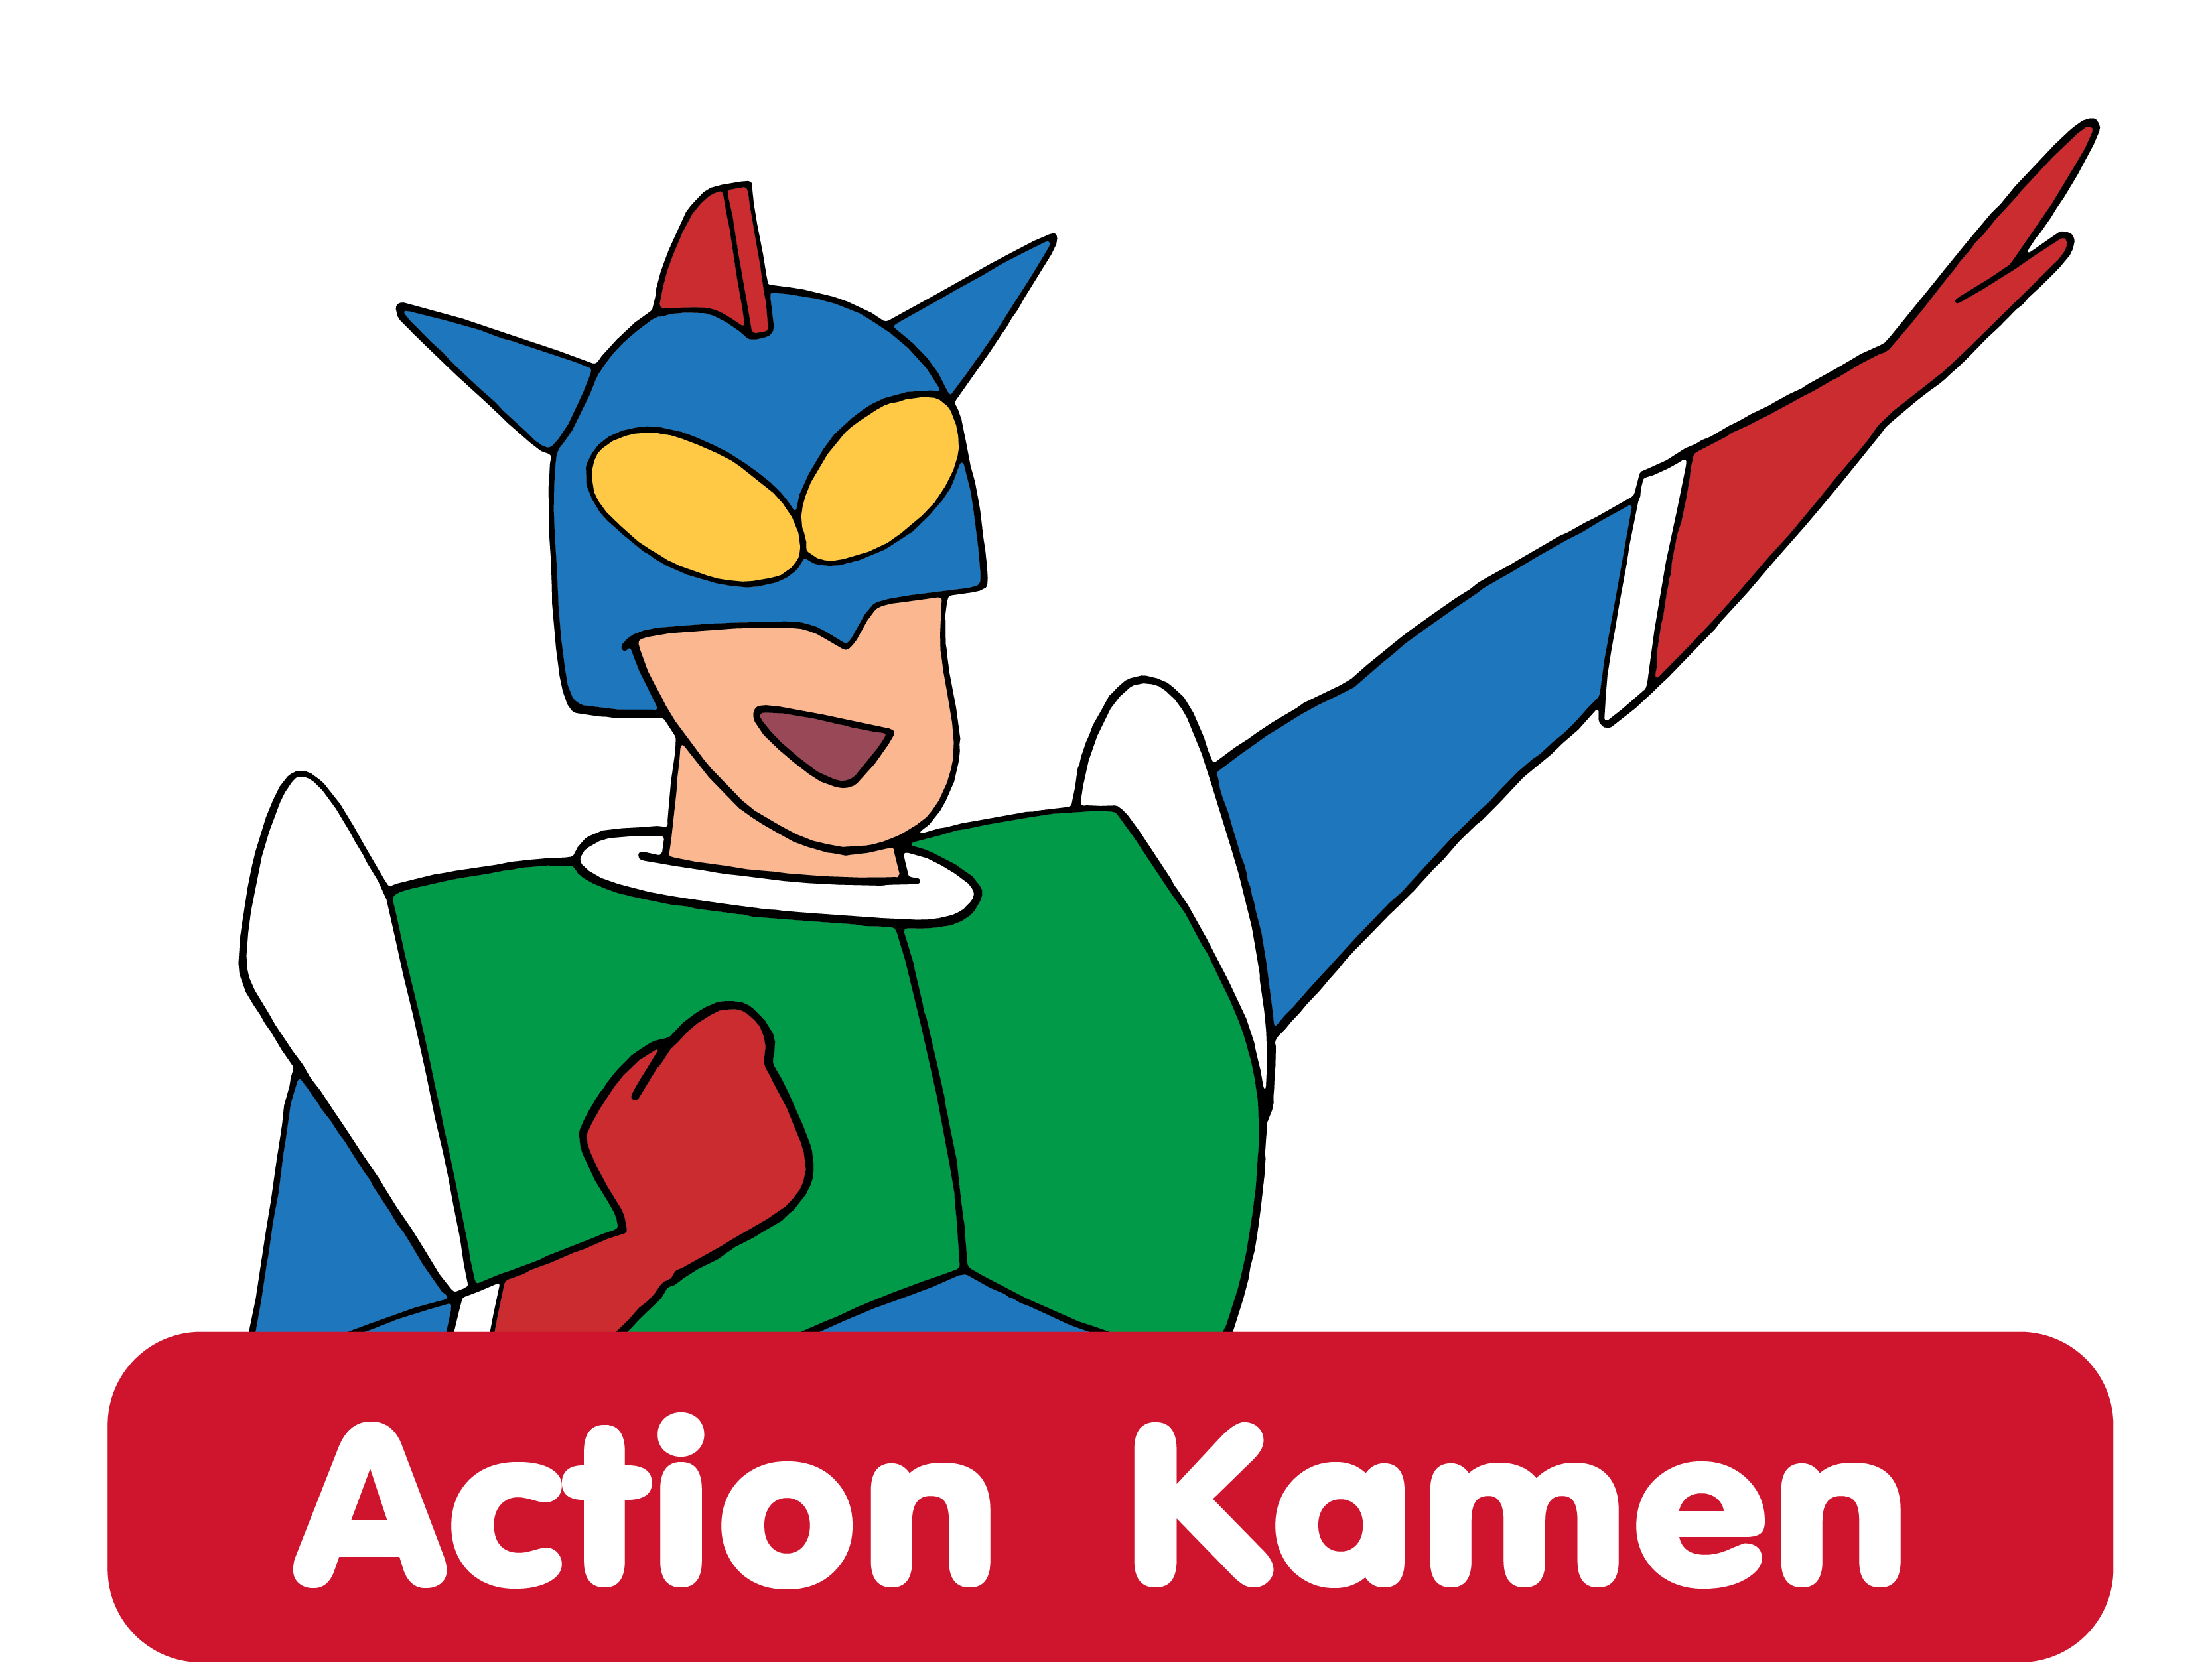 Action Kamen